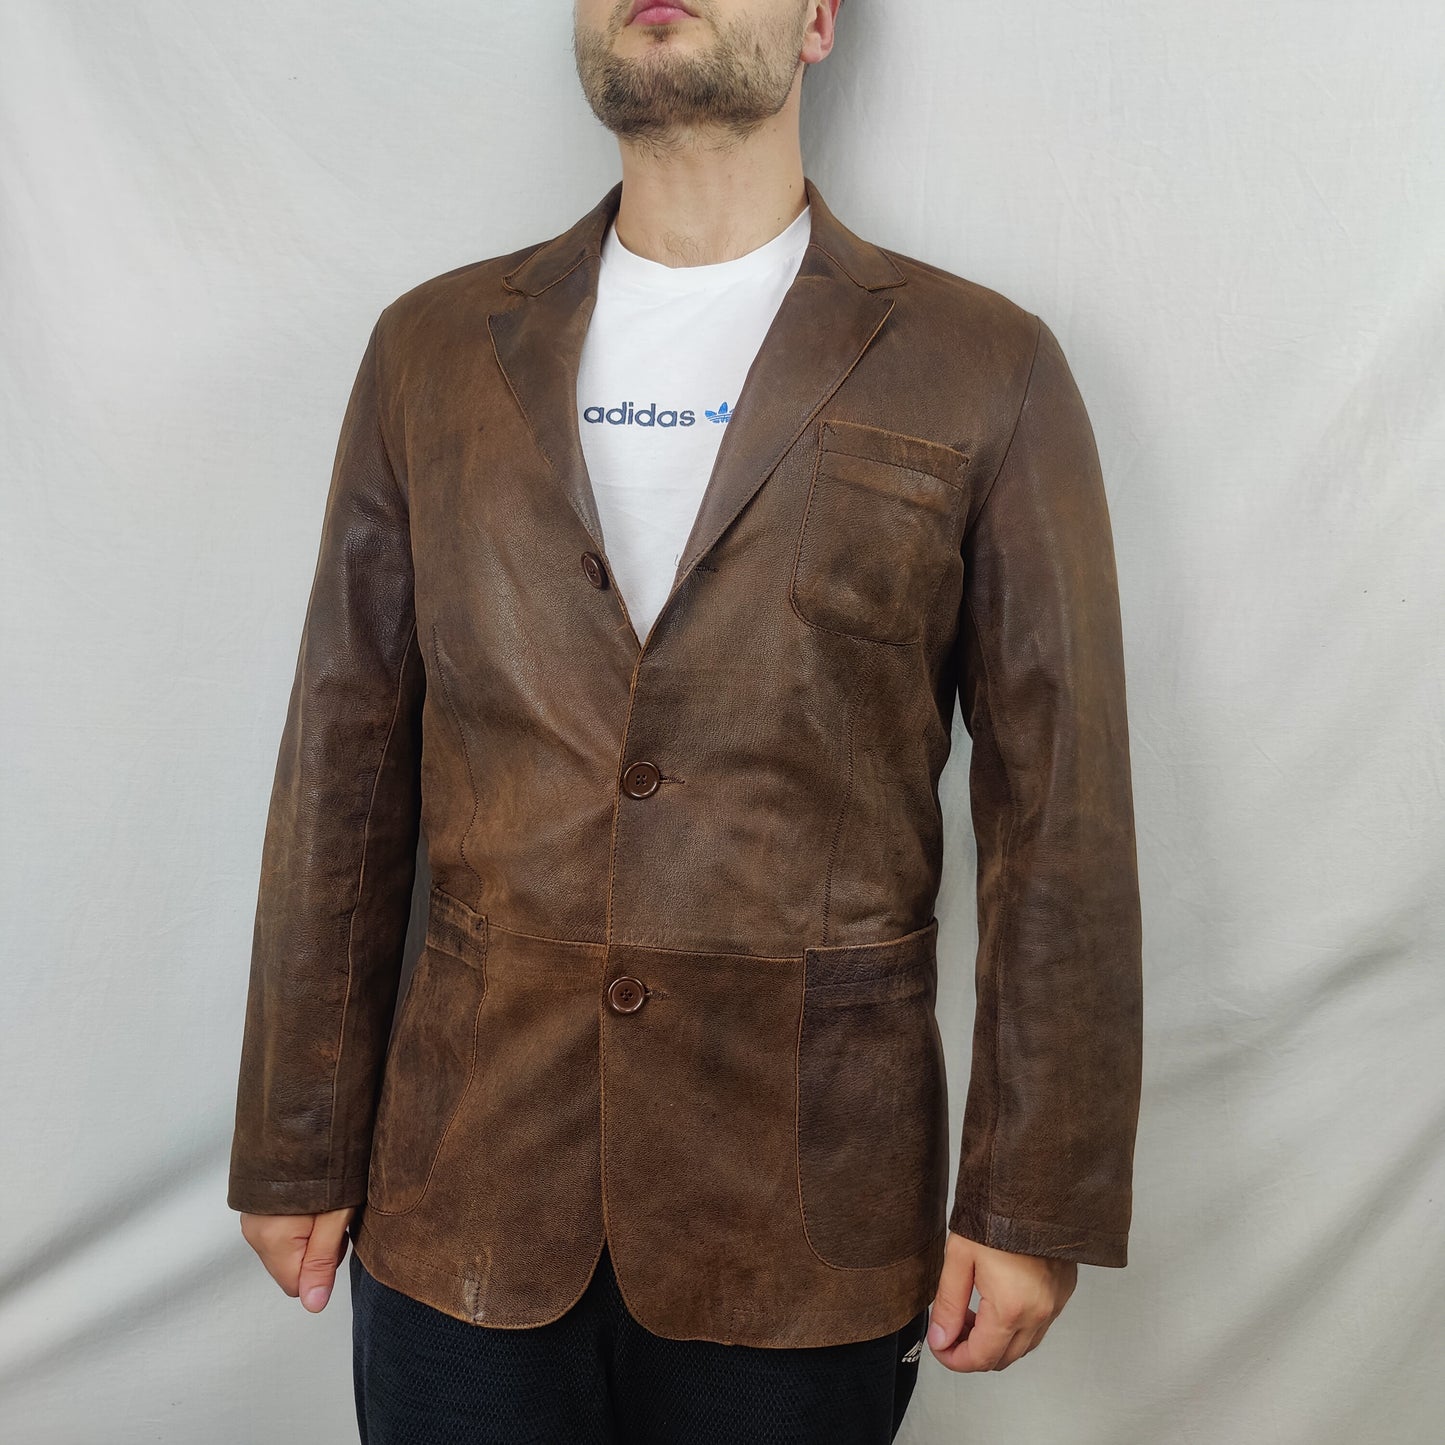 Springfield Vintage Brown Goat Leather Blazer Jacket Men Size Large